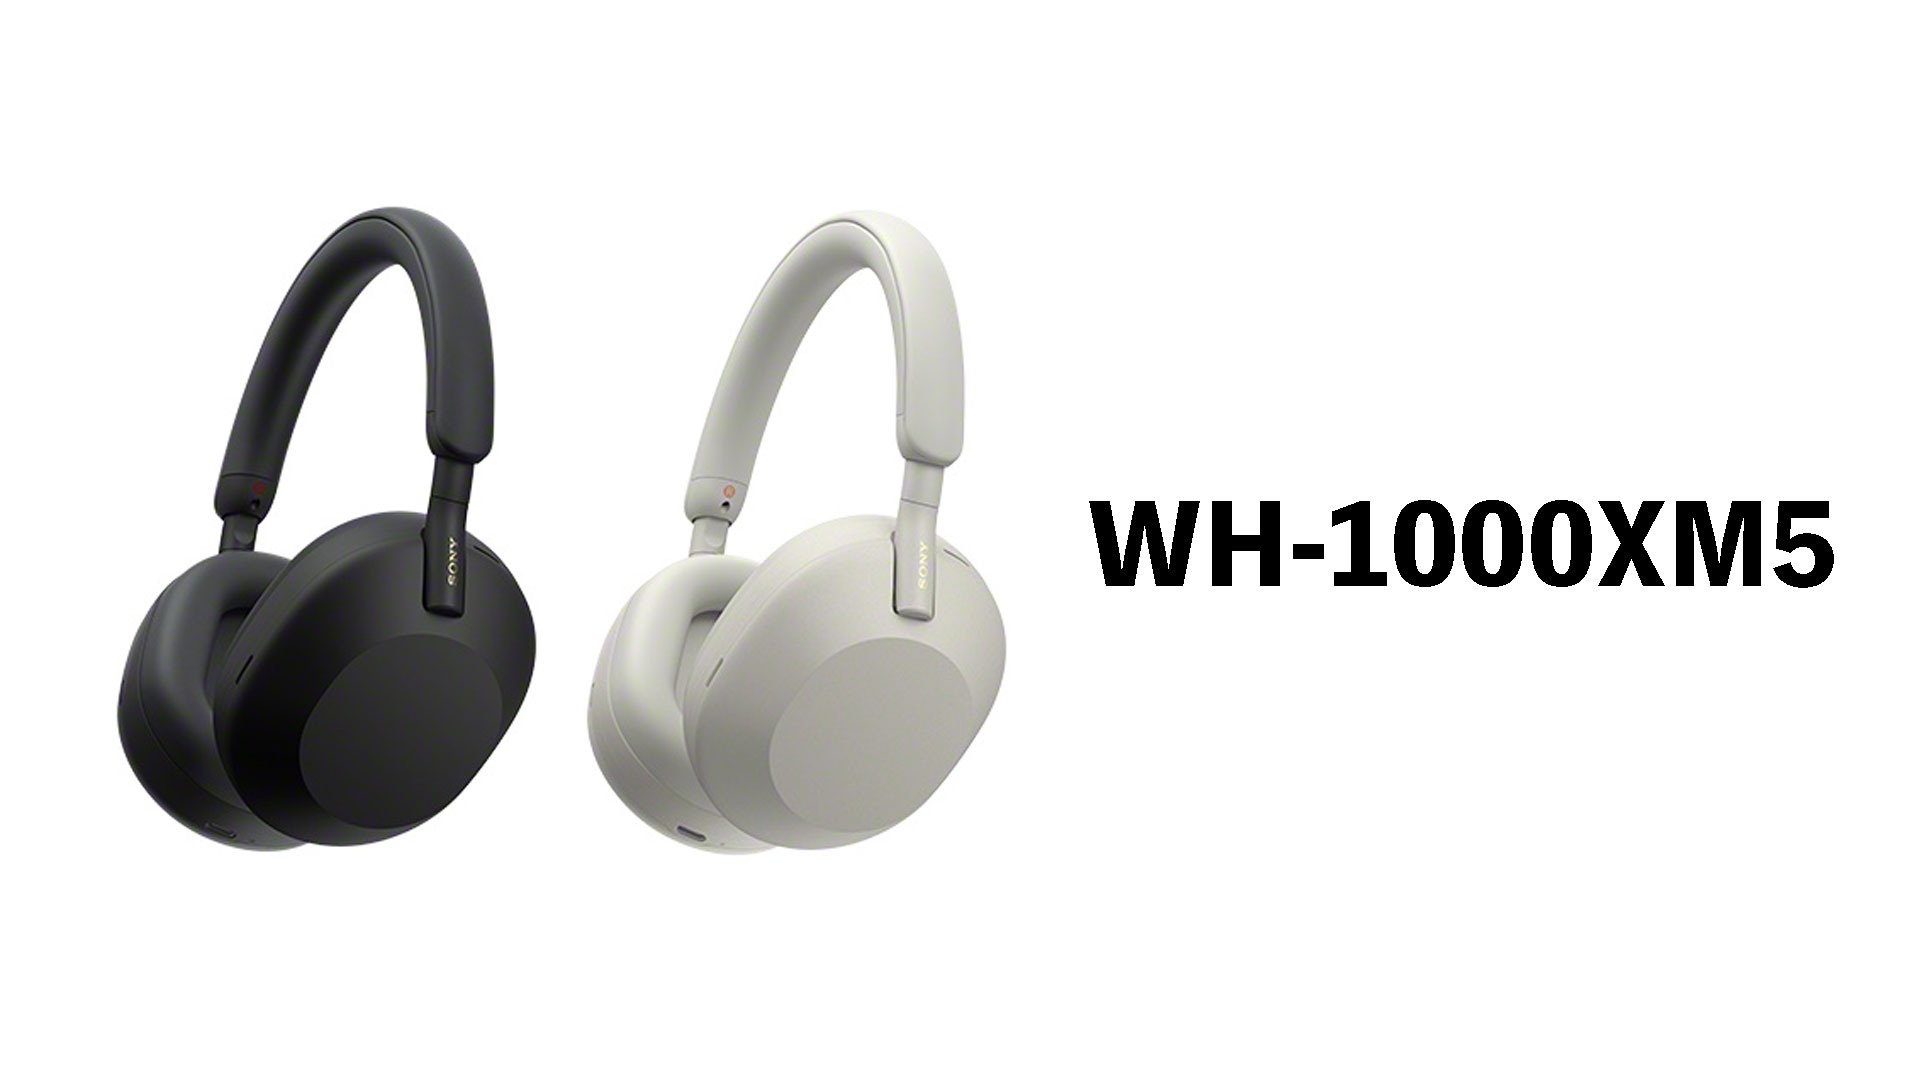 ソニーのワイヤレスヘッドホンが更に進化した「WH-1000XM5 